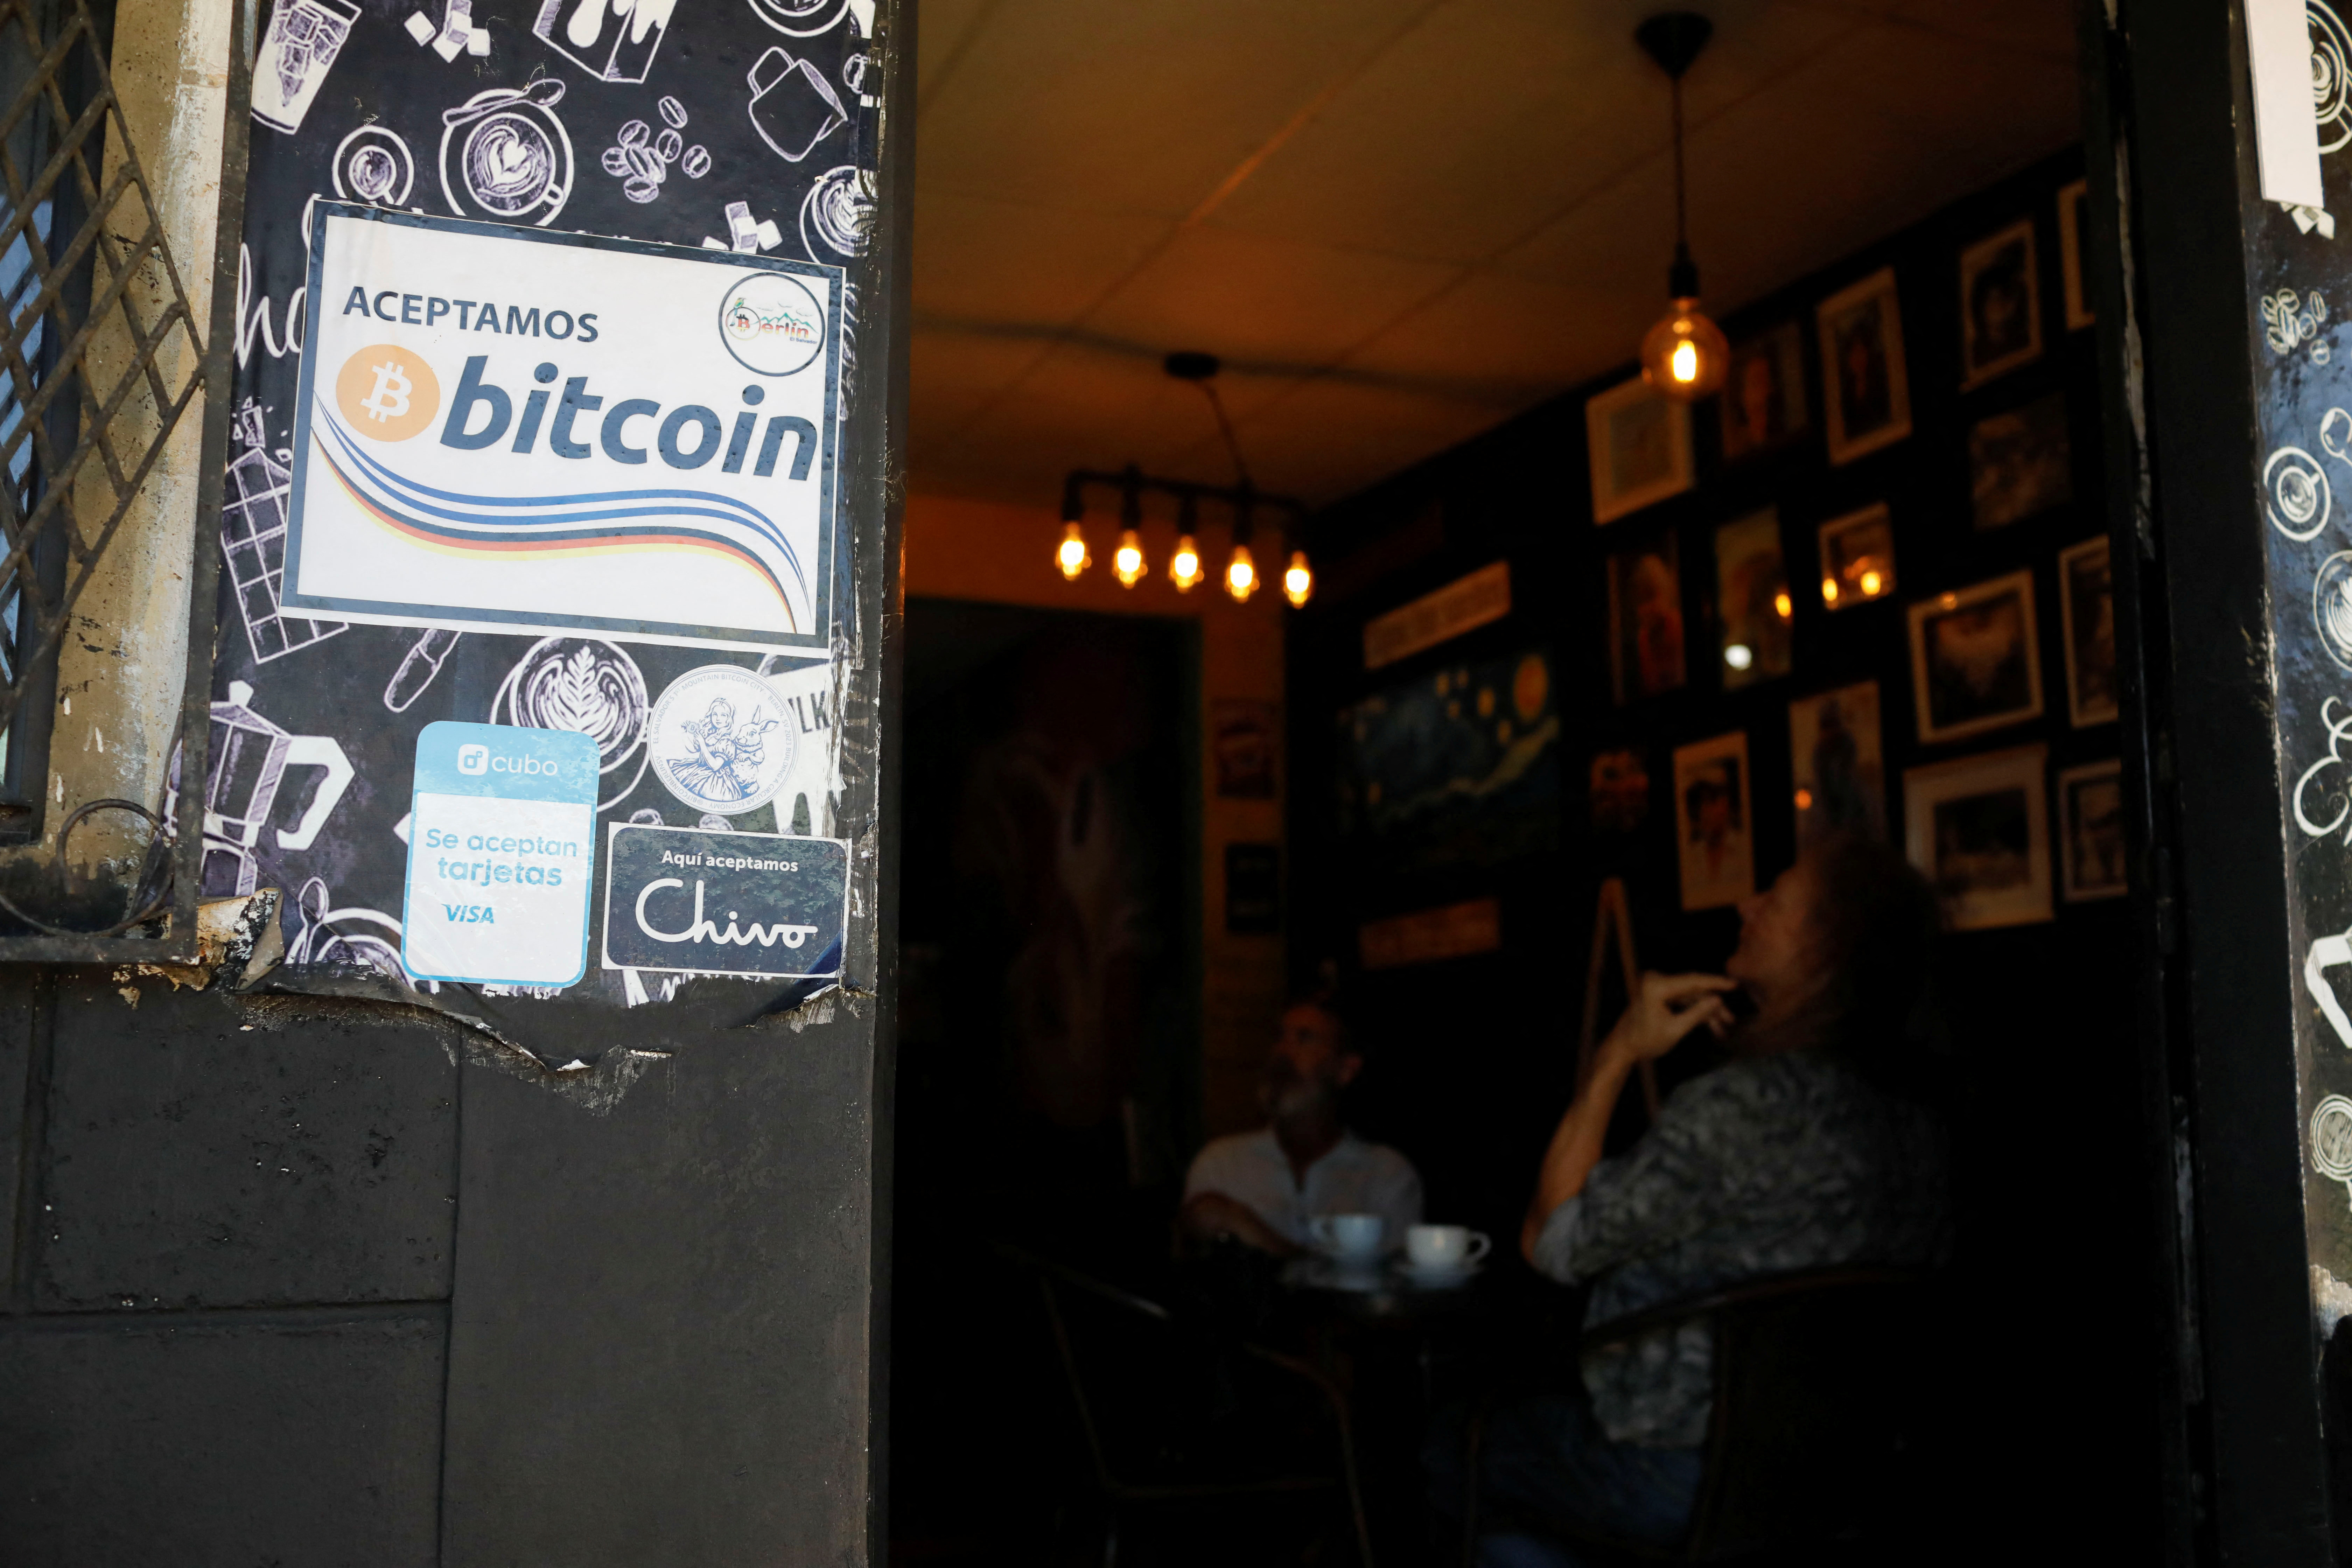 Short on cash, El Salvador continues Bitcoin dream